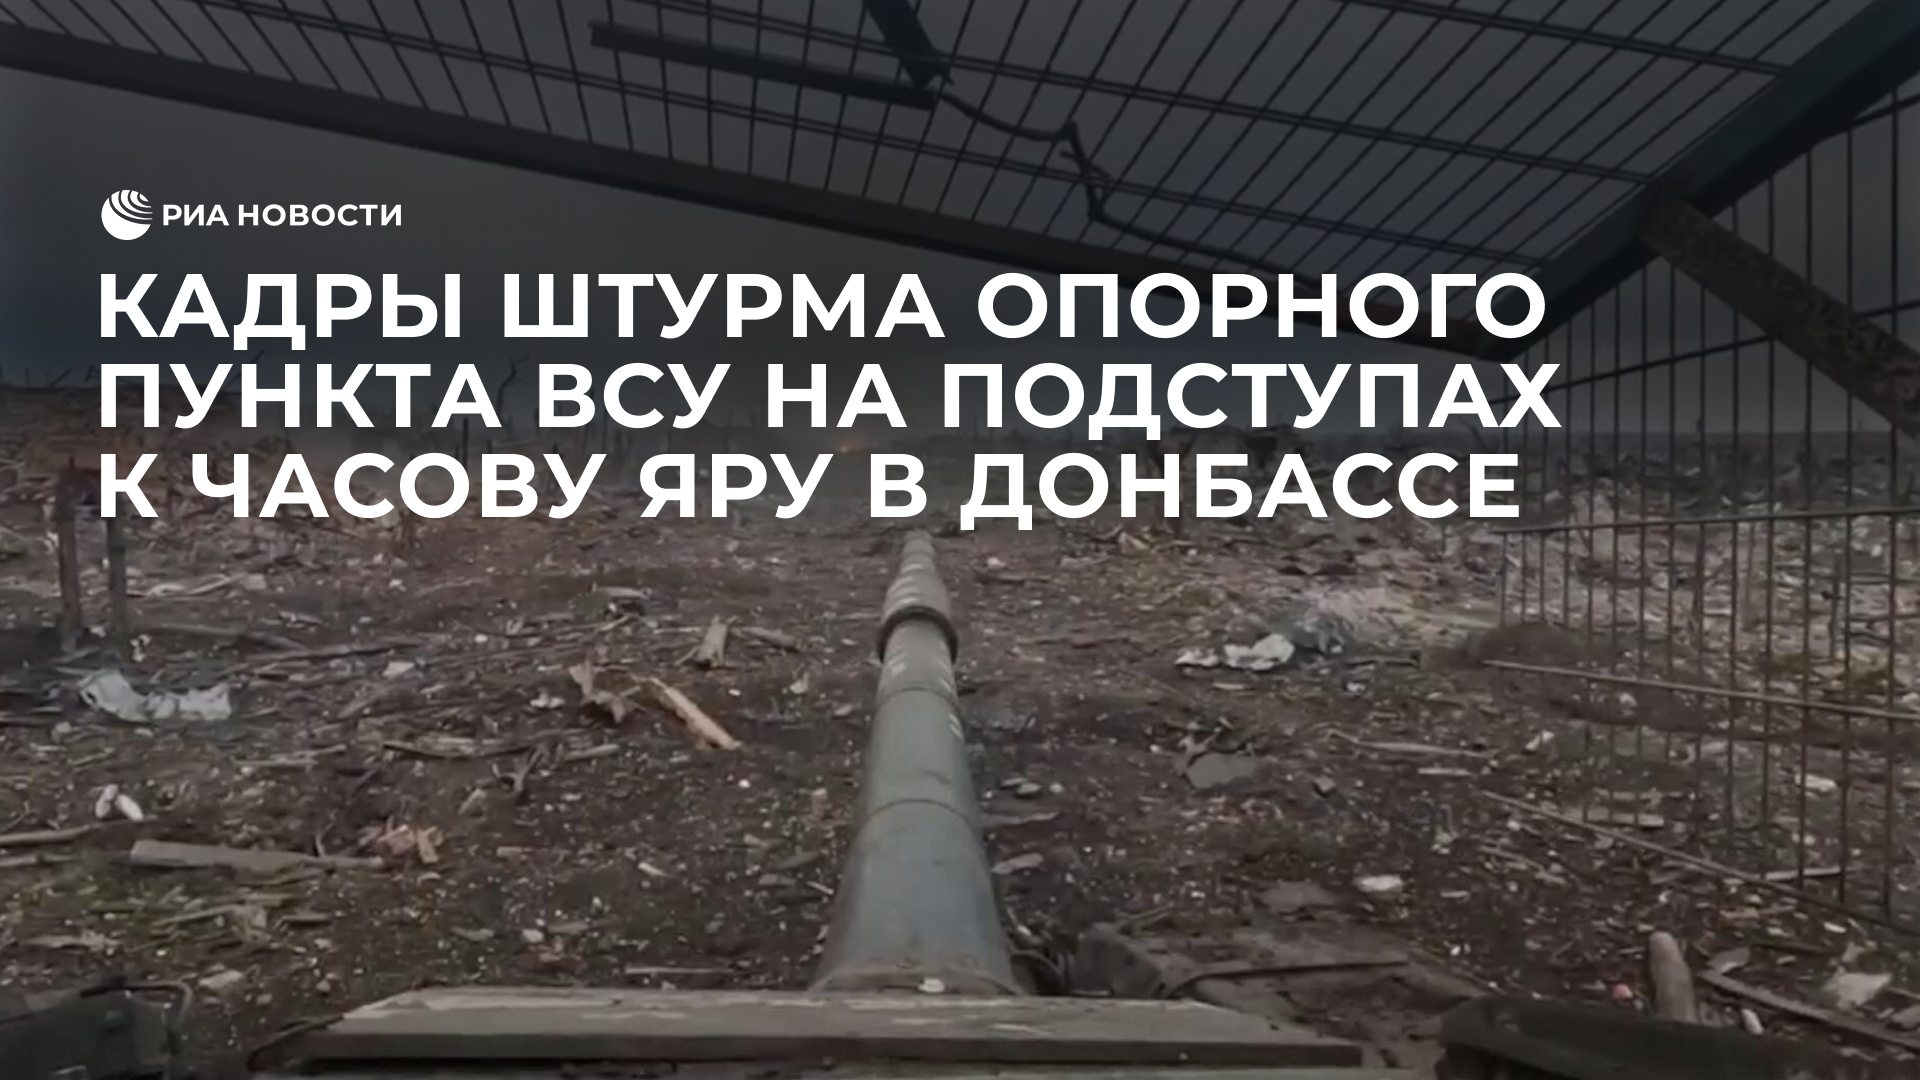 Кадры штурма опорного пункта ВСУ на подступах к Часову Яру в Донбассе